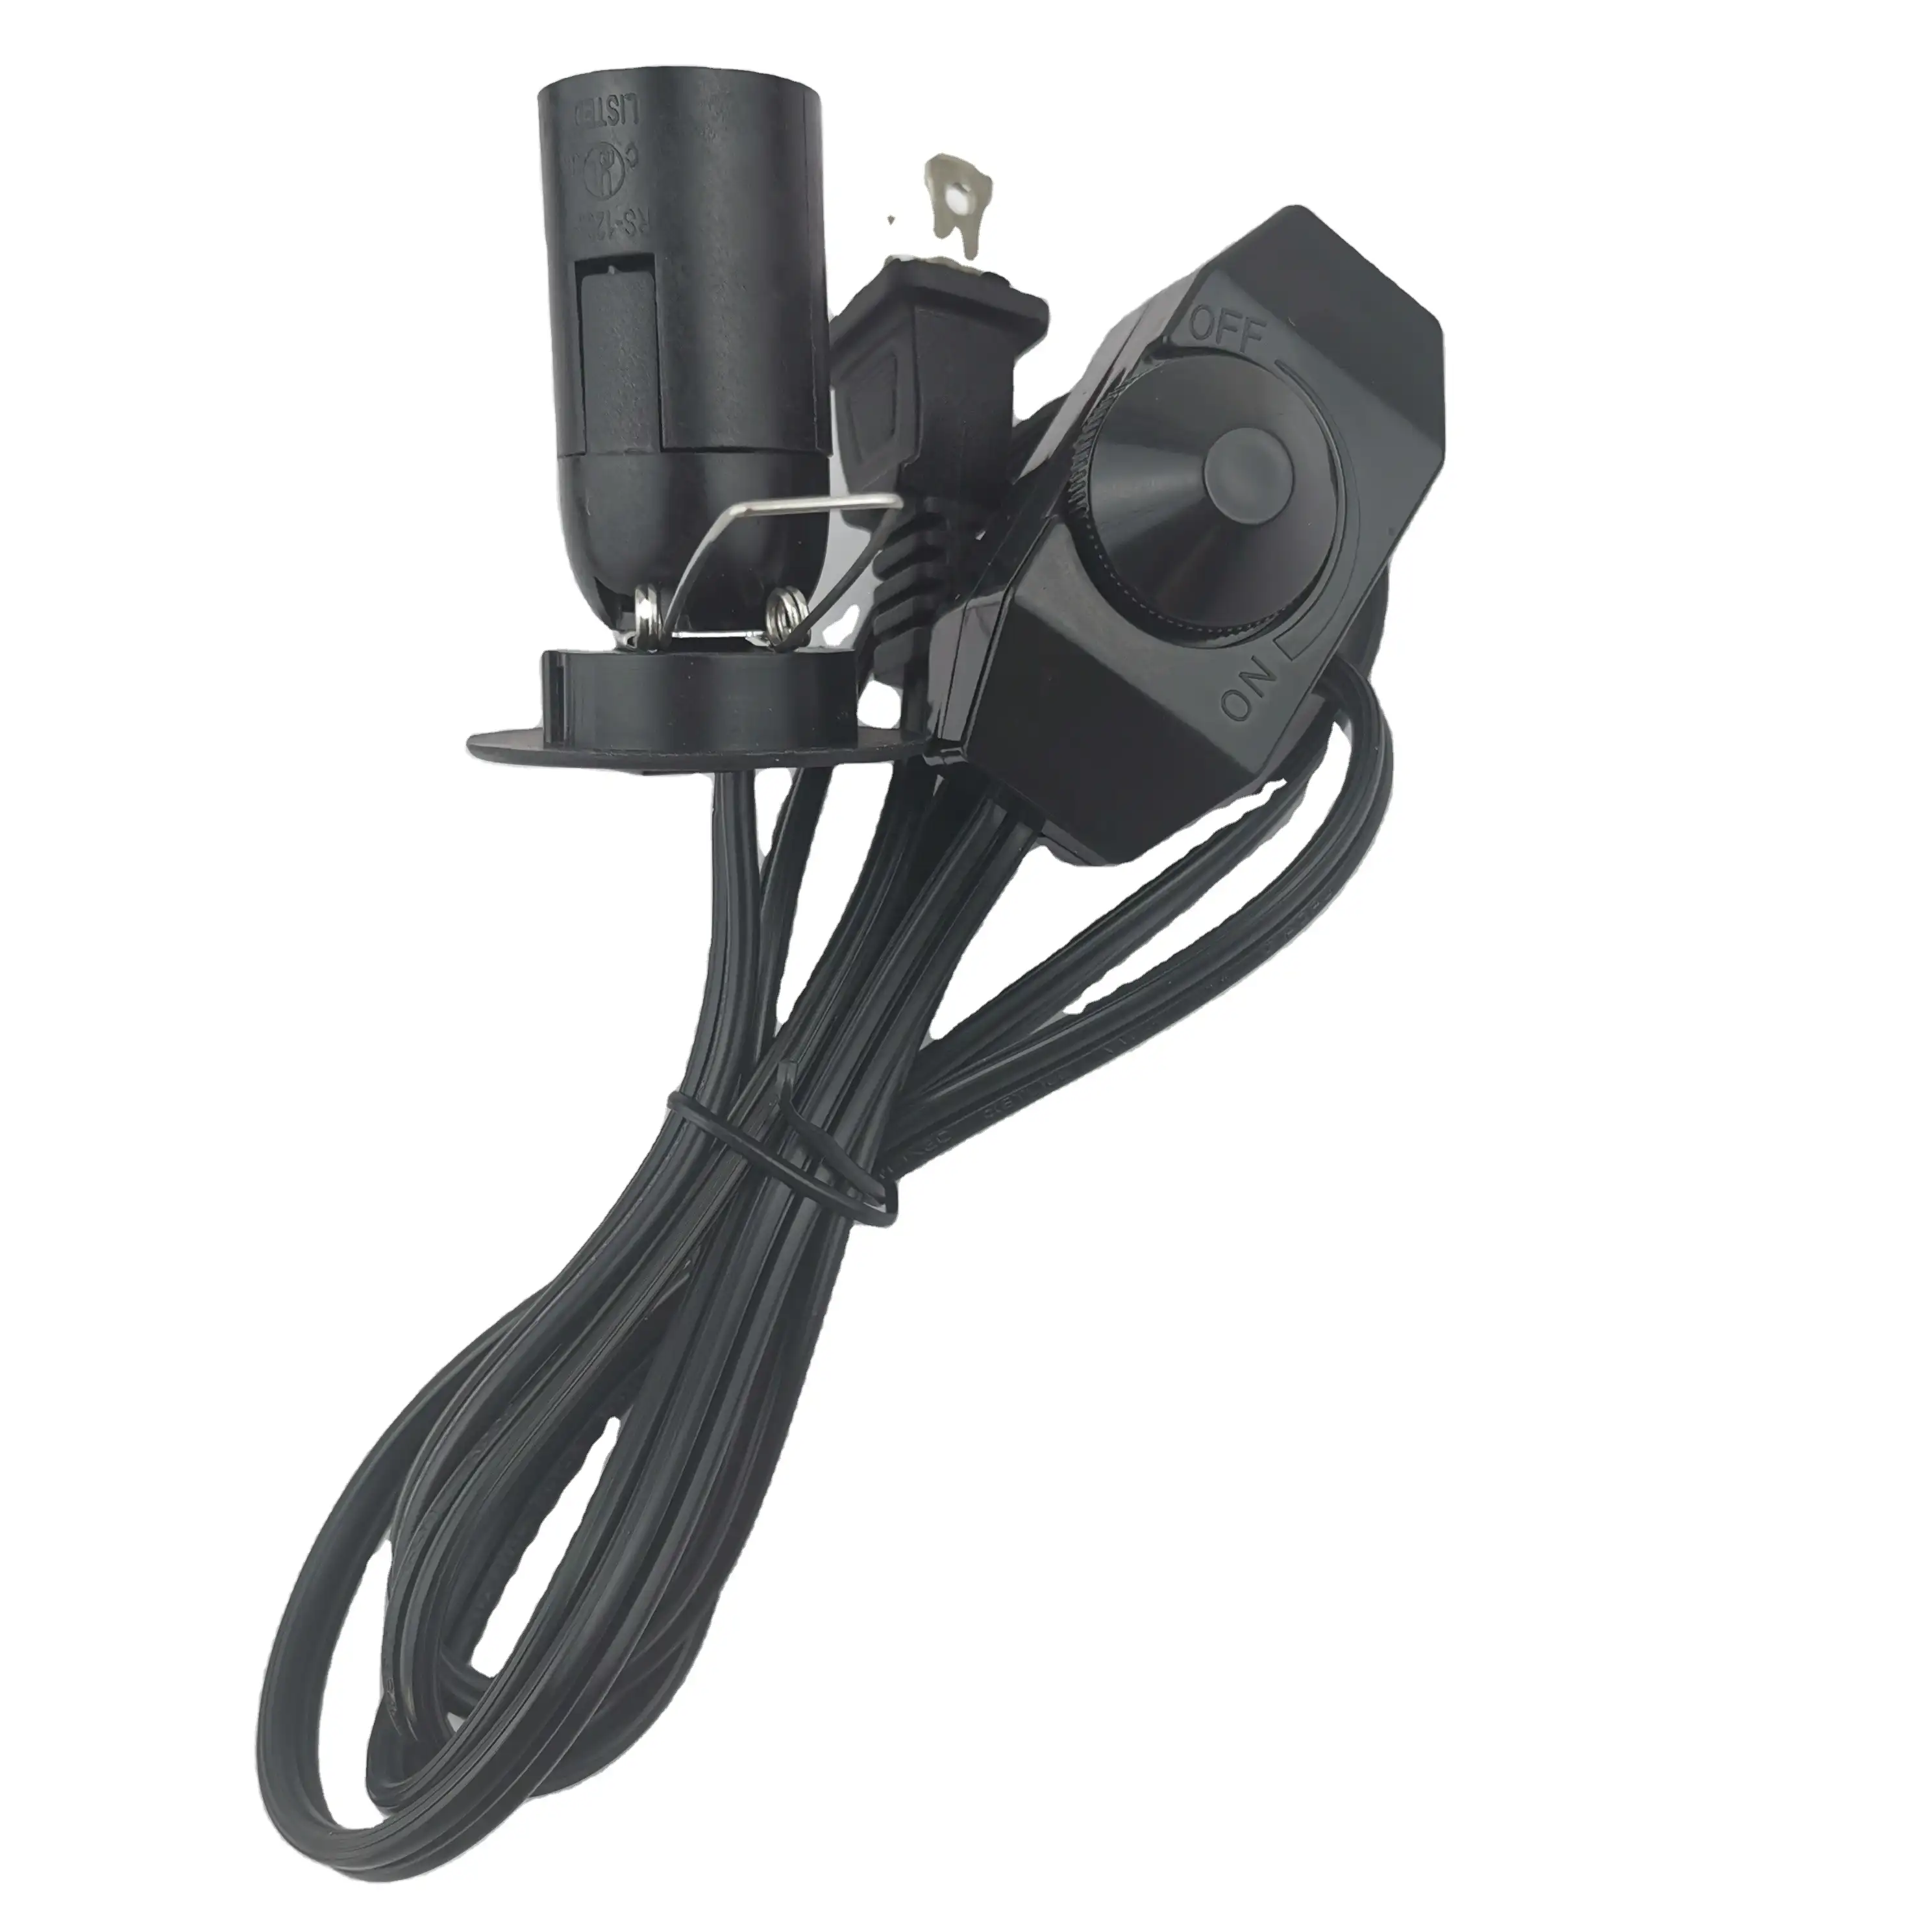 Kabel Listrik Nema 1-15P Amerika Serikat 2 Wire dengan Switch Dimmer E12 Soket Lampu Garam Lampu Kabel